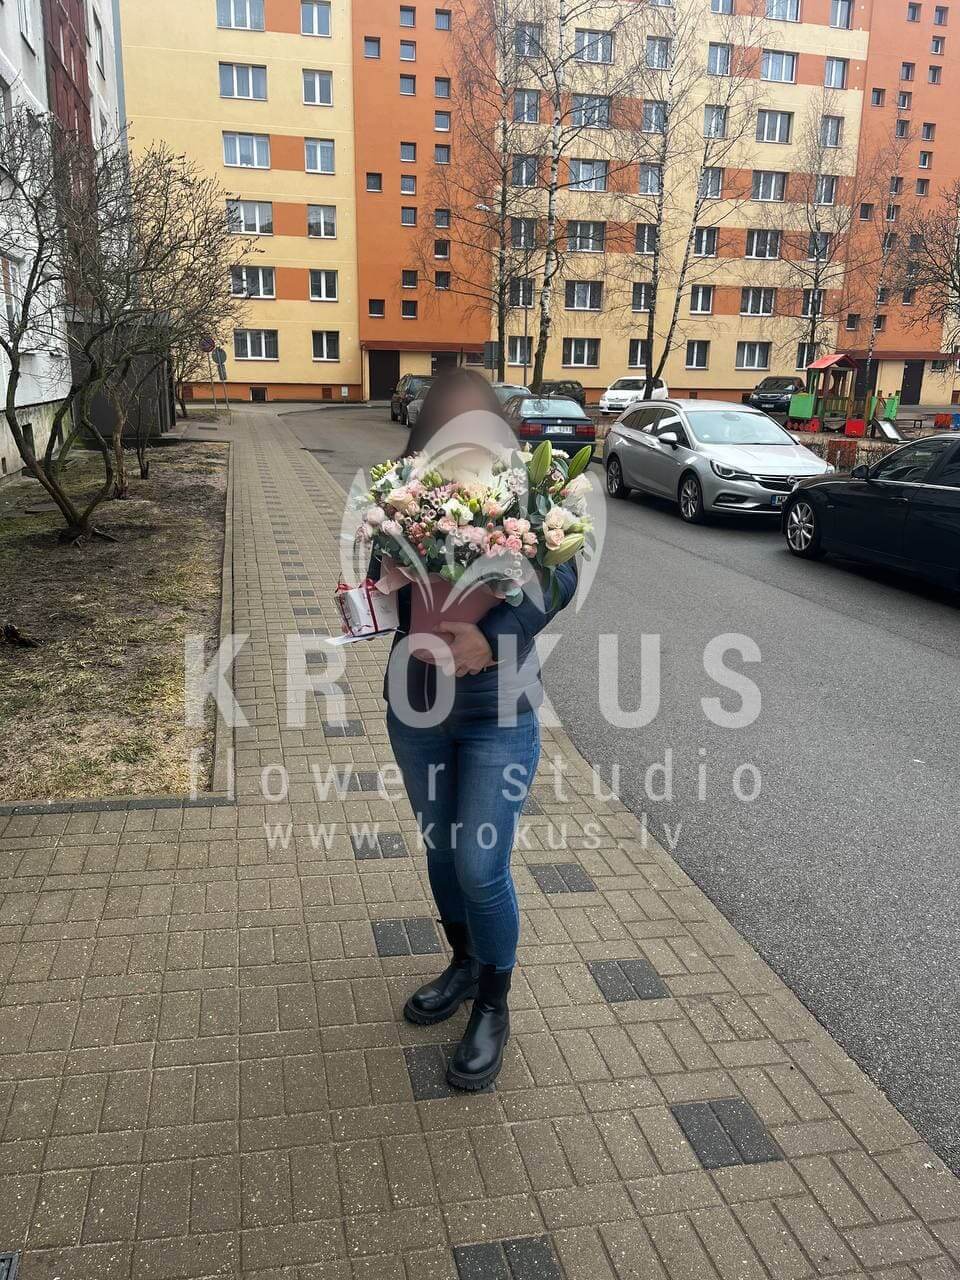 Доставка цветов в город Salaspils (коробкакустовые розыкаллылилиикремовые розываксфлауэрэвкалиптлизиантусы (эустома))